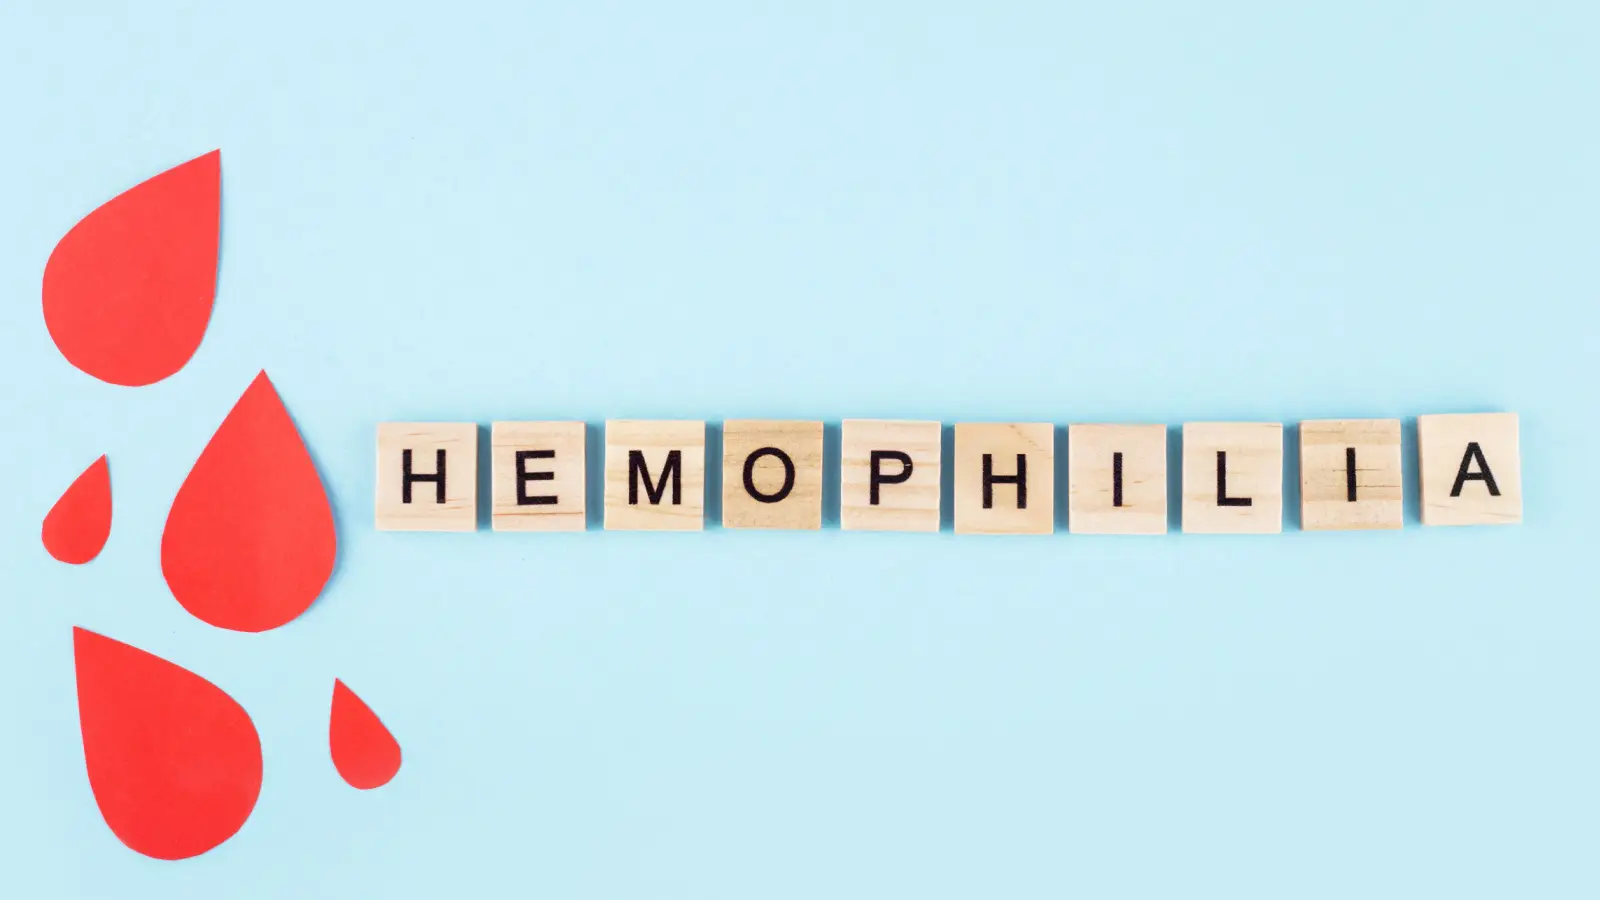 ما هو مرض الهيموفيليا، وما أعراضه؟